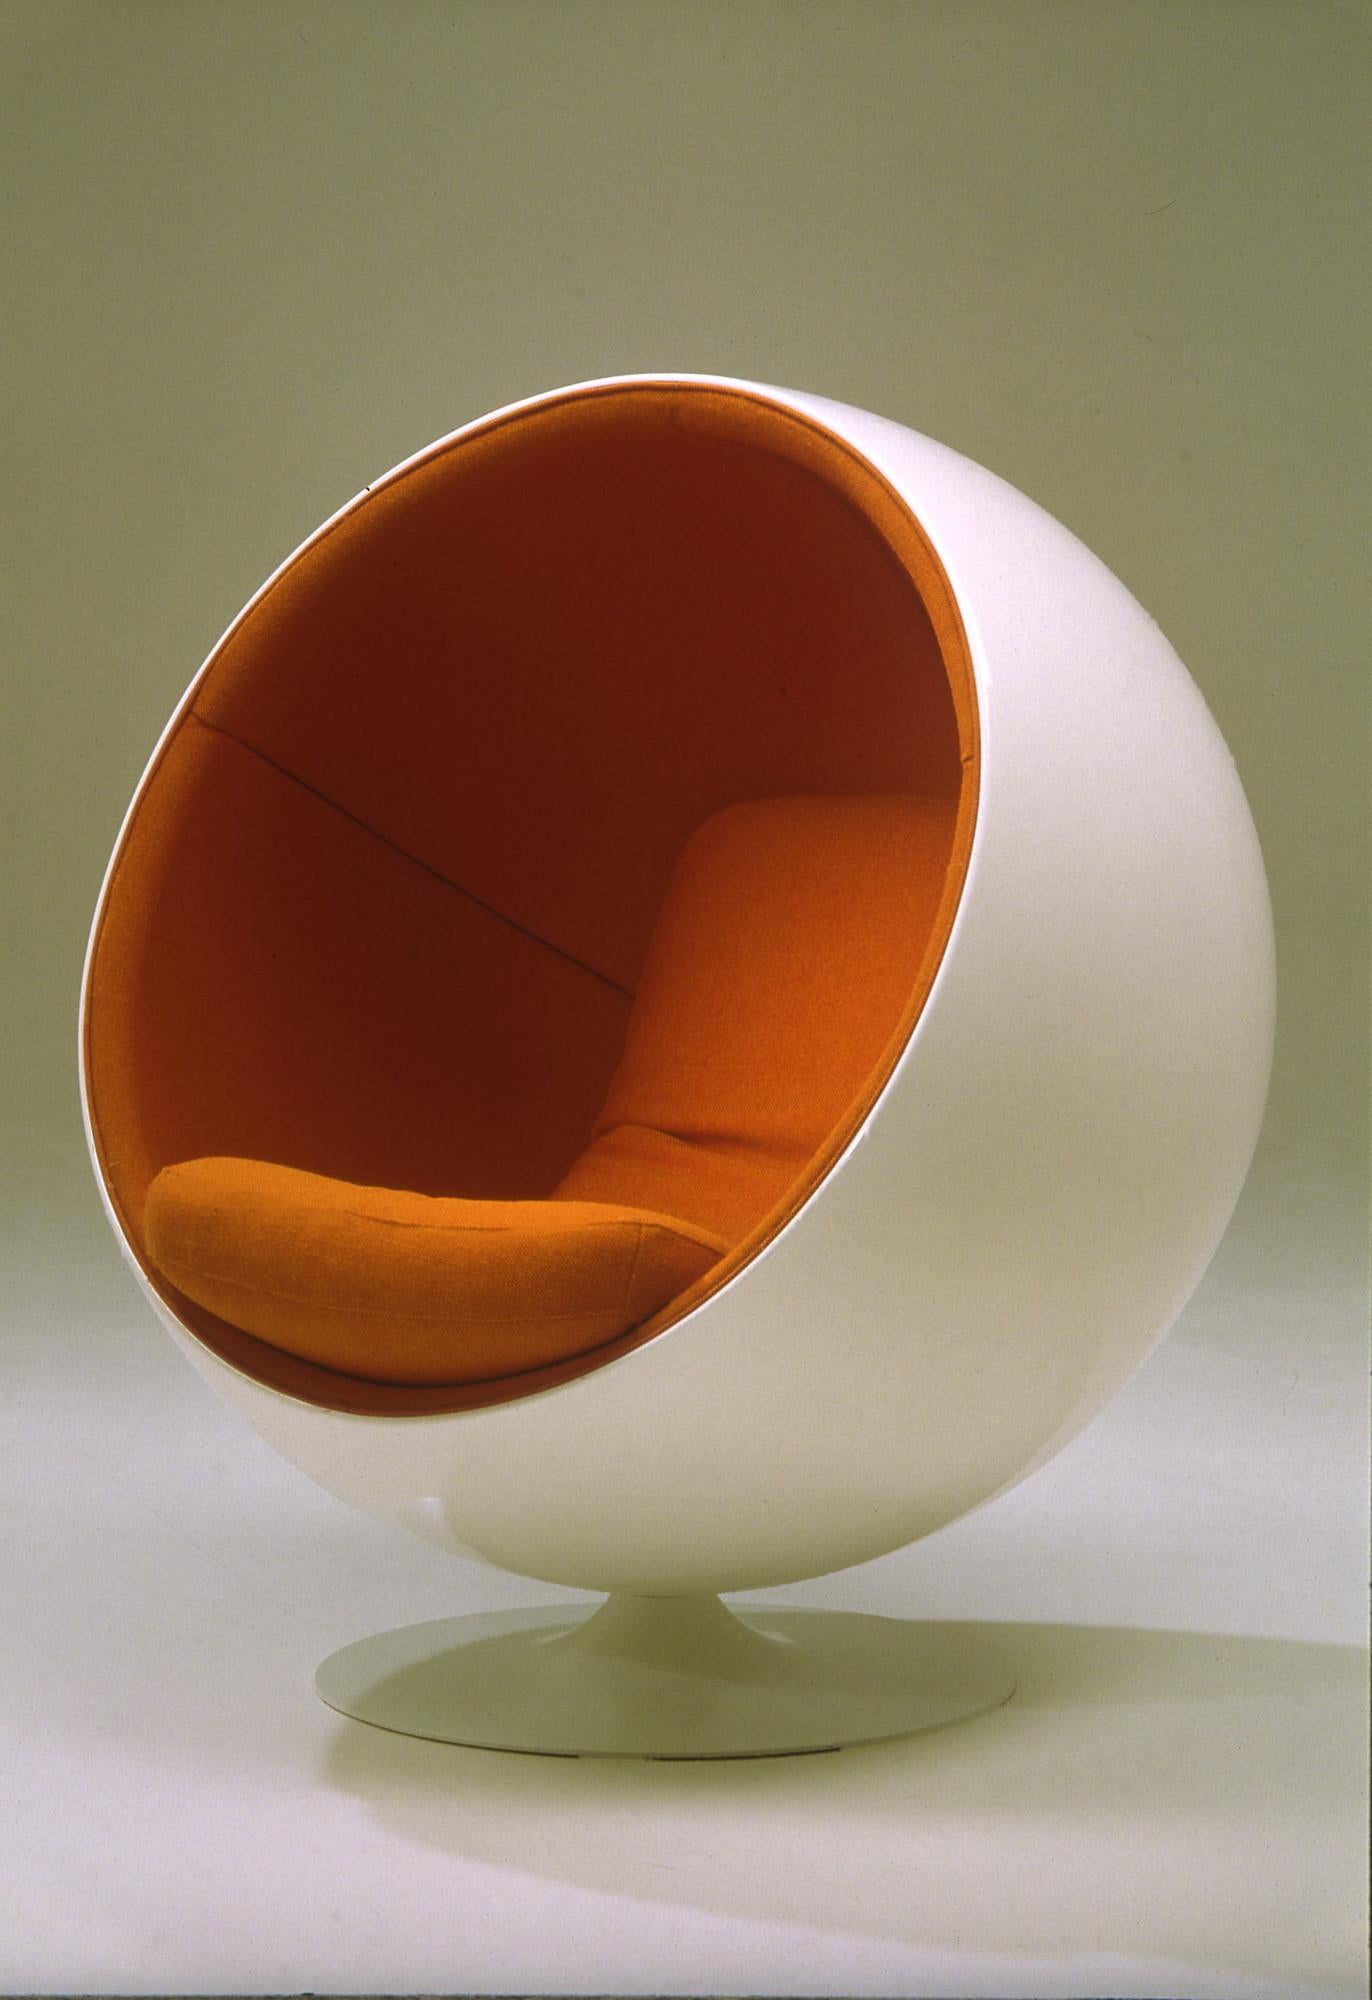 Der Ball Chair wurde 1963 entworfen und 1966 auf der Kölner Möbelmesse vorgestellt. Der Stuhl ist einer der bekanntesten und beliebtesten Klassiker des finnischen Designs und war der internationale Durchbruch von Eero Aarnio. Der Ball Chair ist in